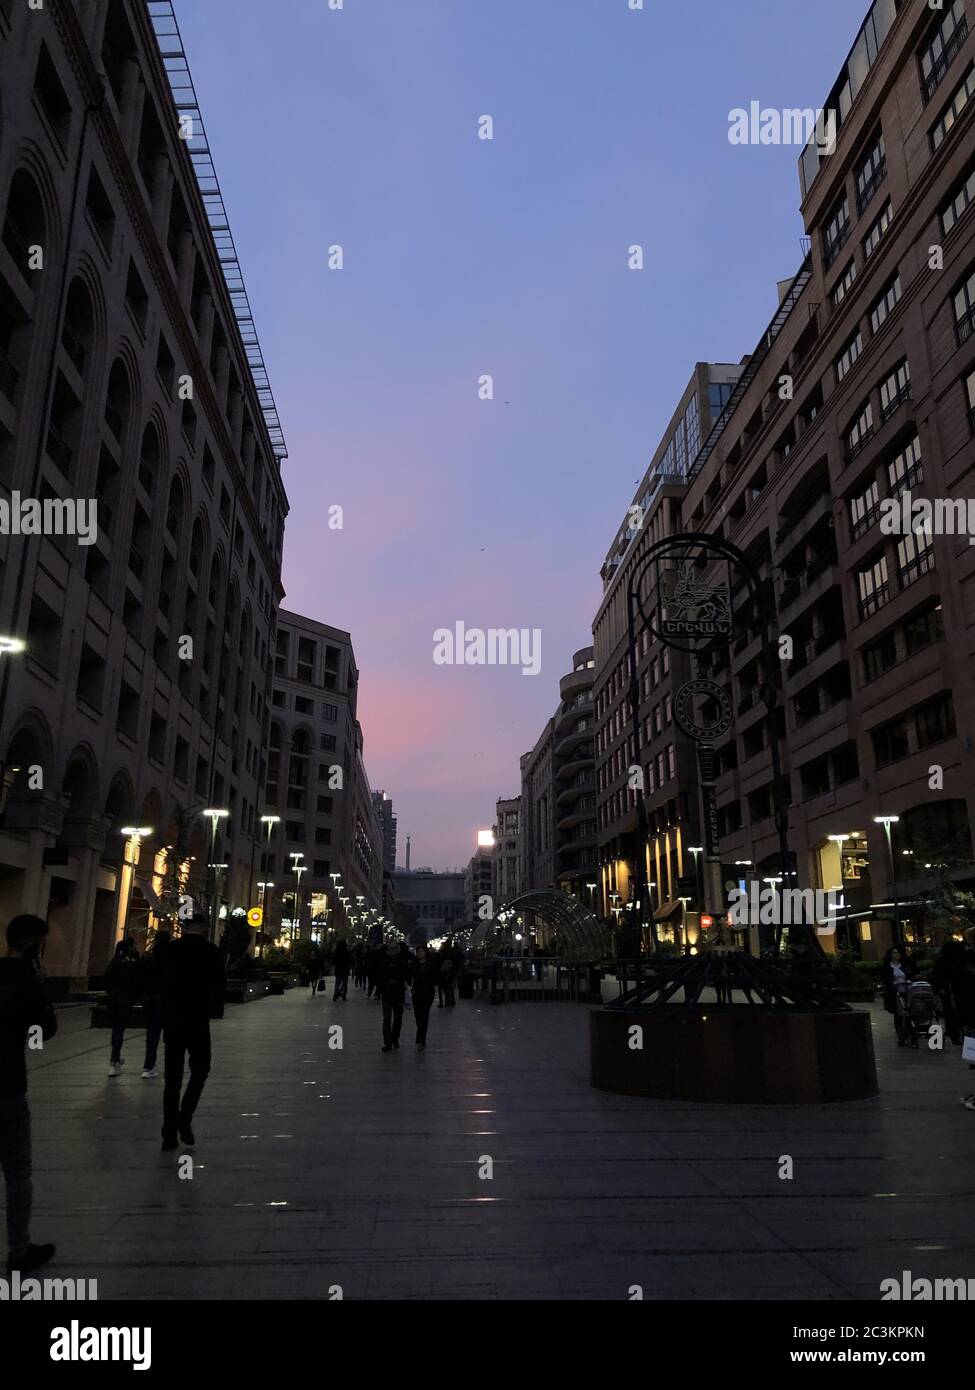 Vertikale Aufnahme von Menschen, die während des Sonnenuntergangs in der nördlichen Allee von Jerewan, Armenien, spazieren gehen Stockfoto